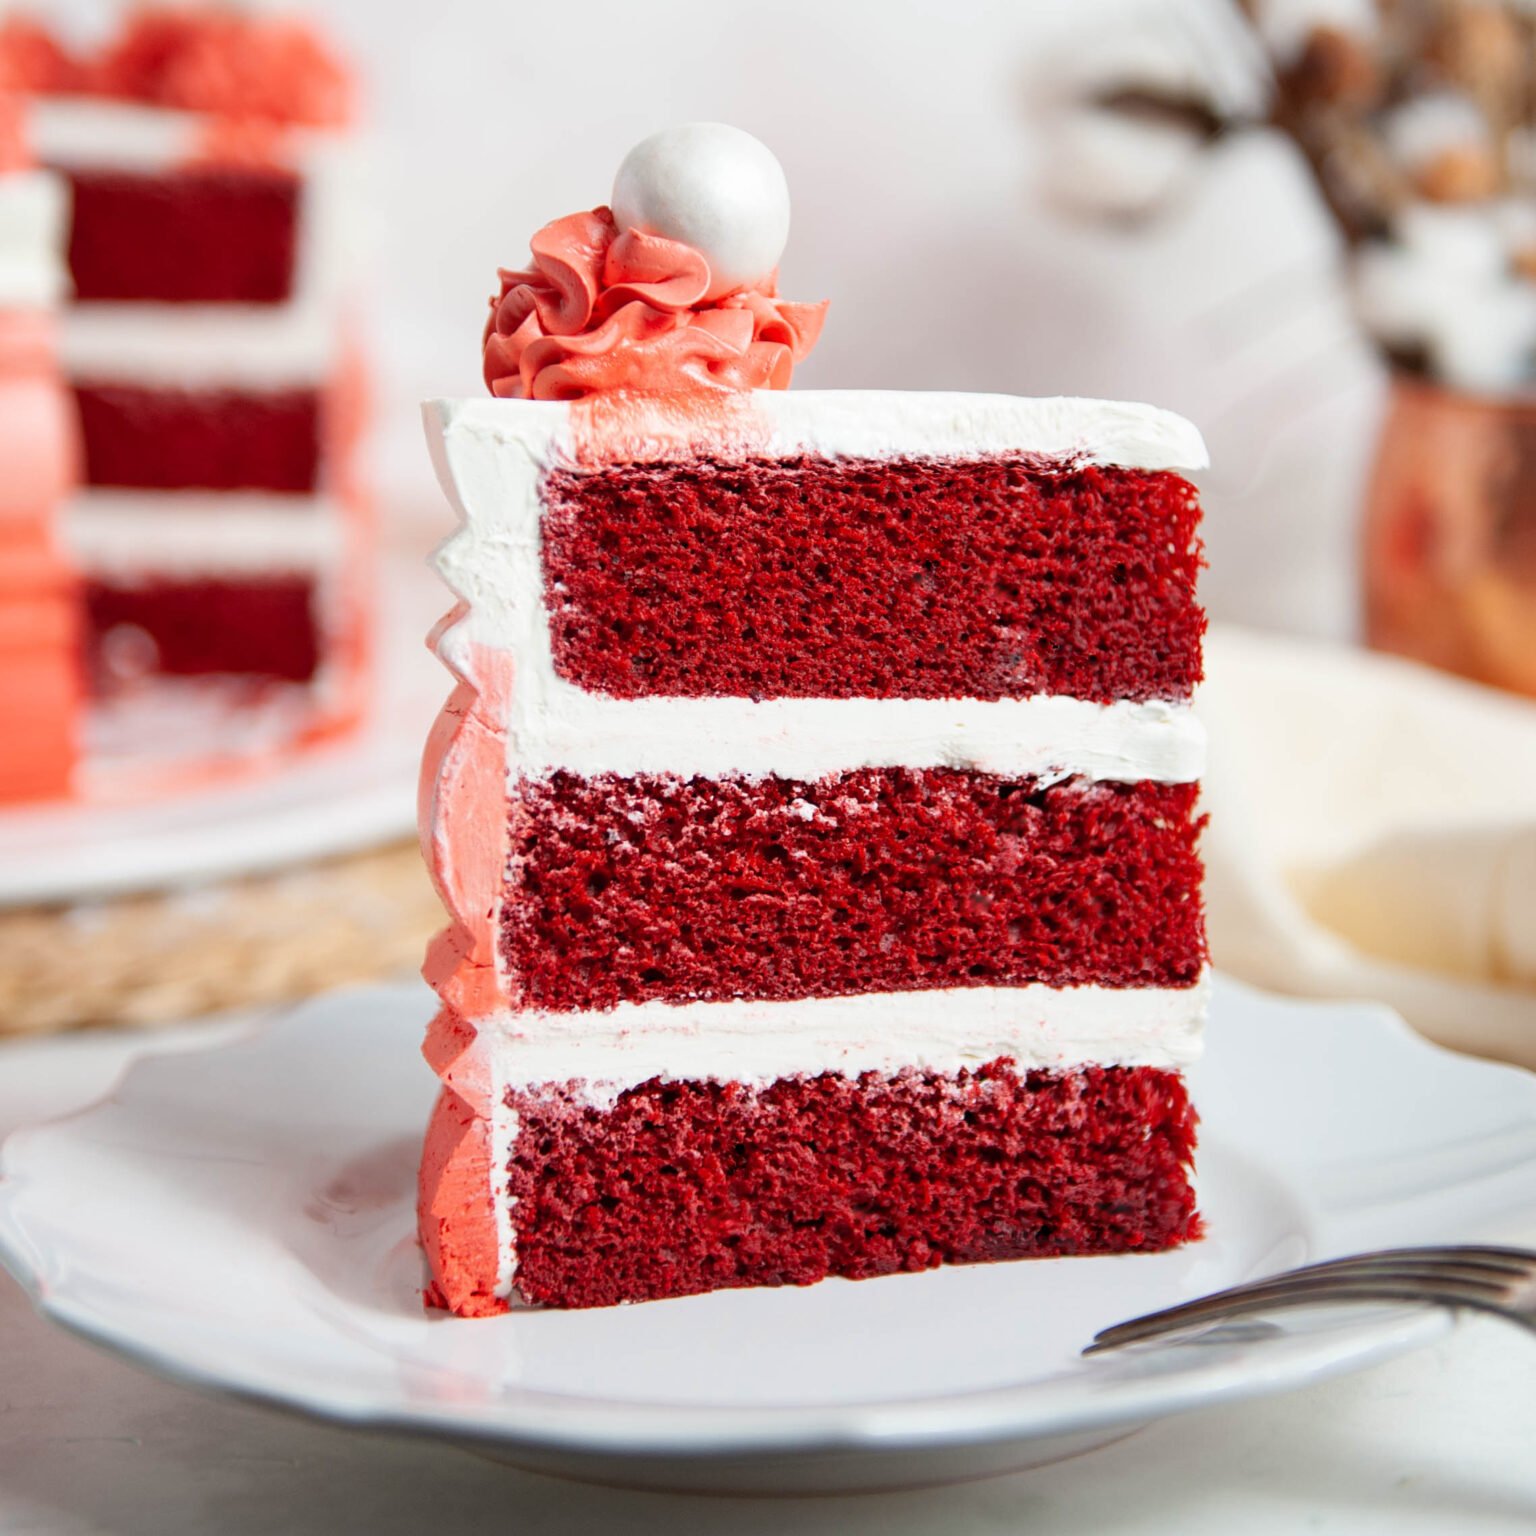 How To Make Red Velvet Box Cake Better - Design Corral